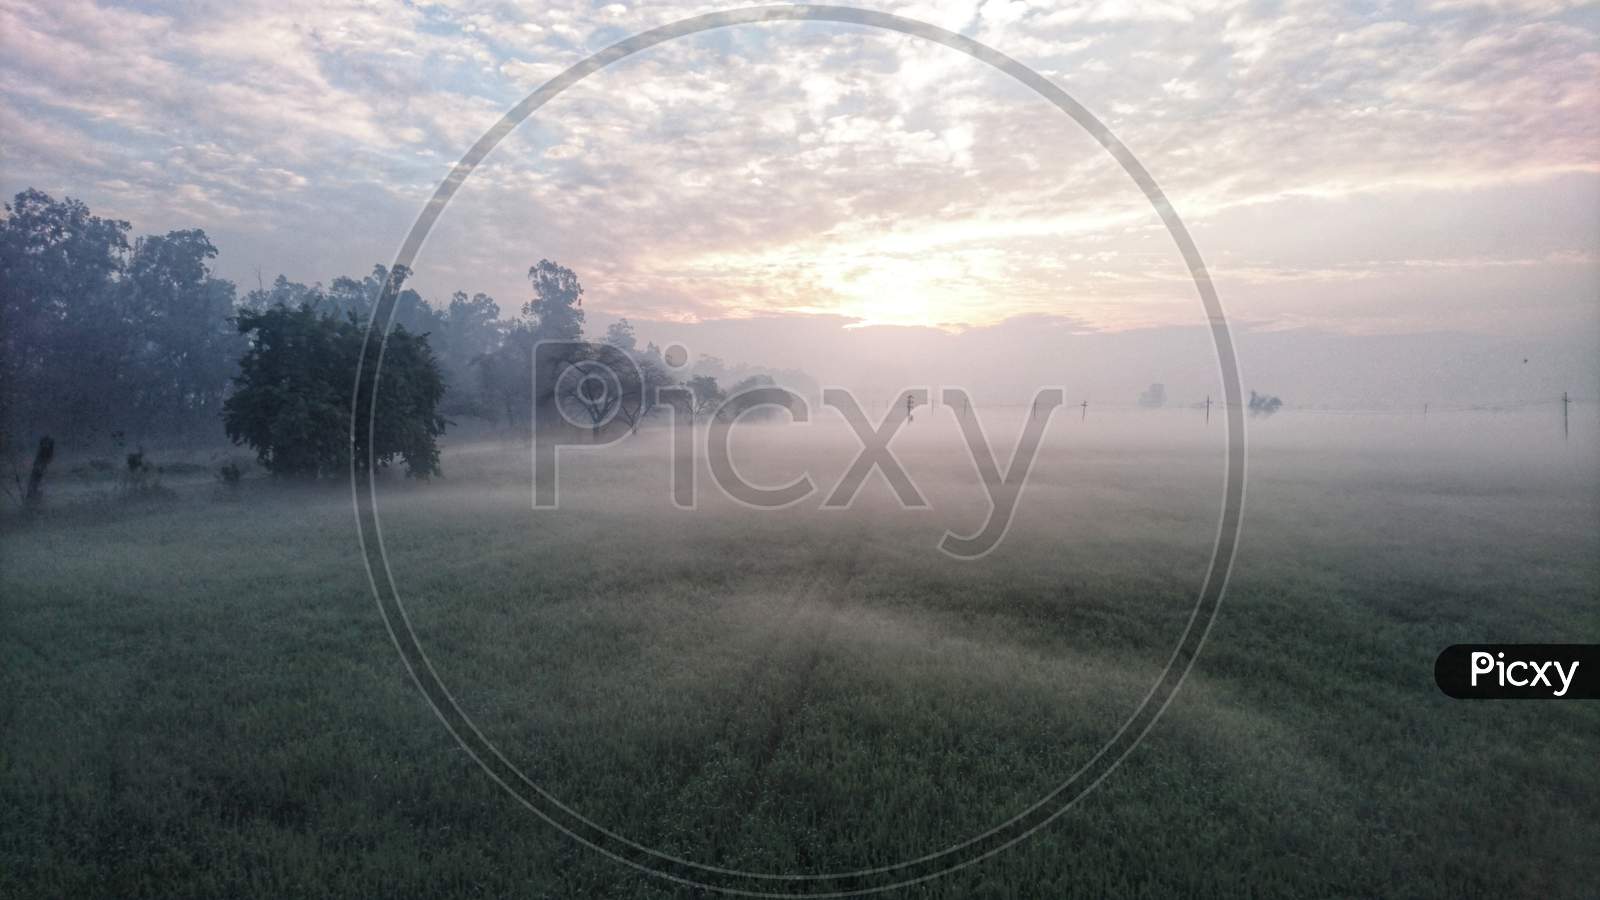 Fog on fields